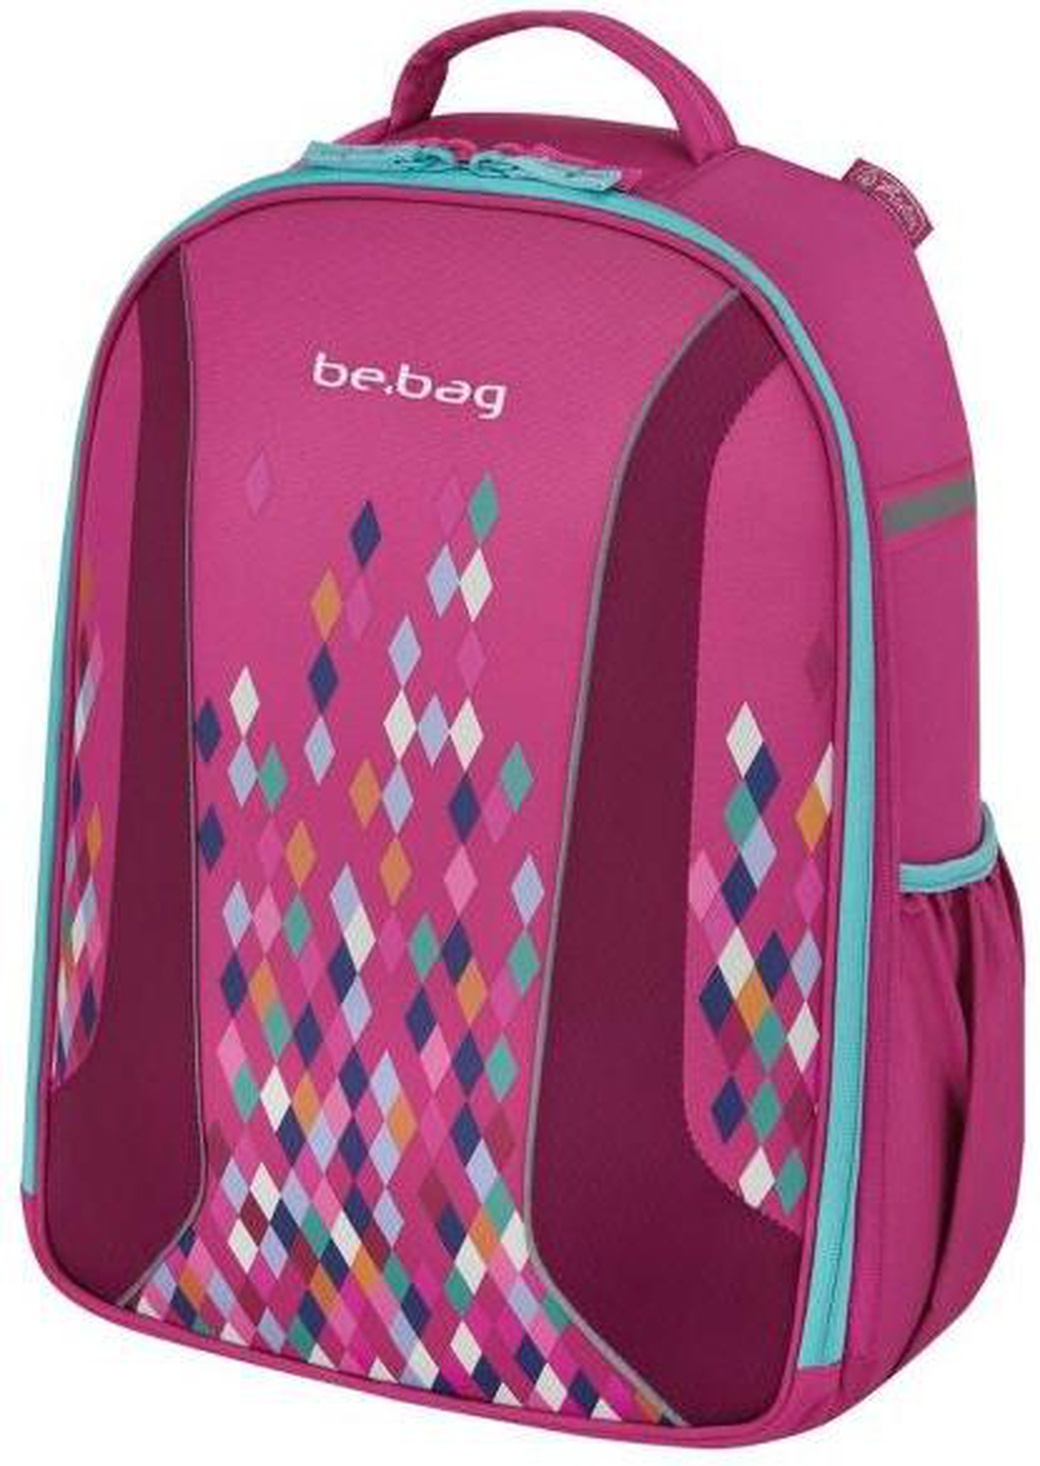 Herlitz Be.Bag Airgo - детский рюкзак Geometric, без наполнения фото